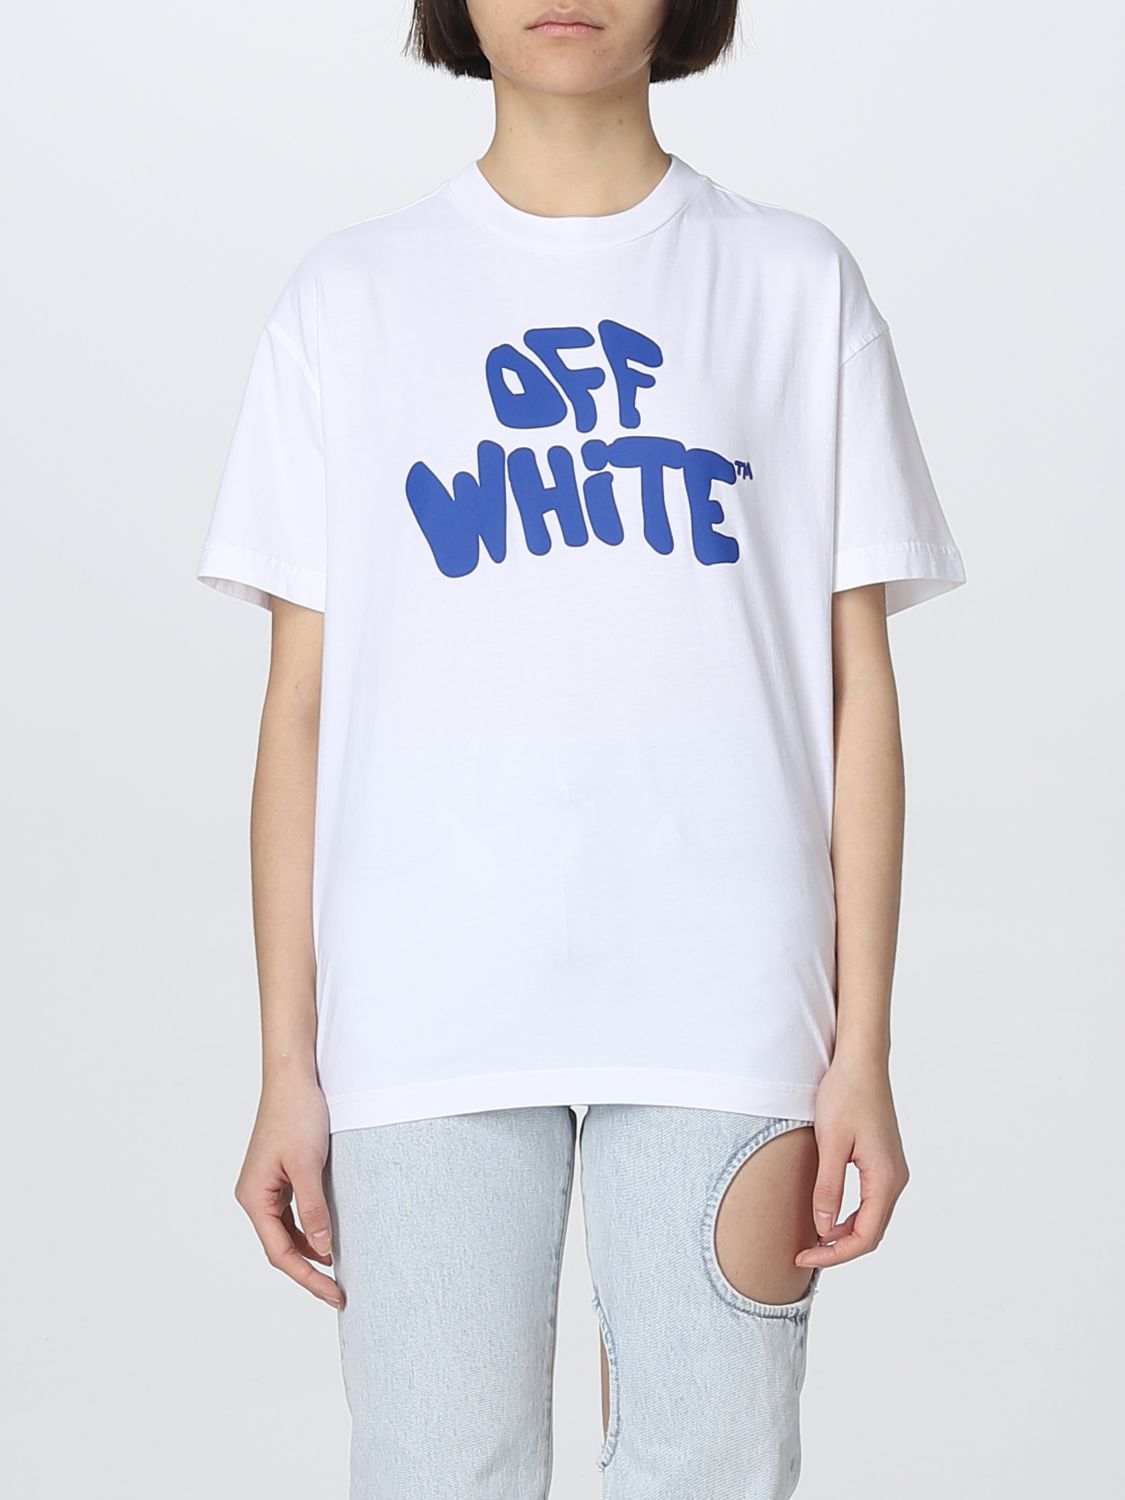 Off-WhiteTシャツ